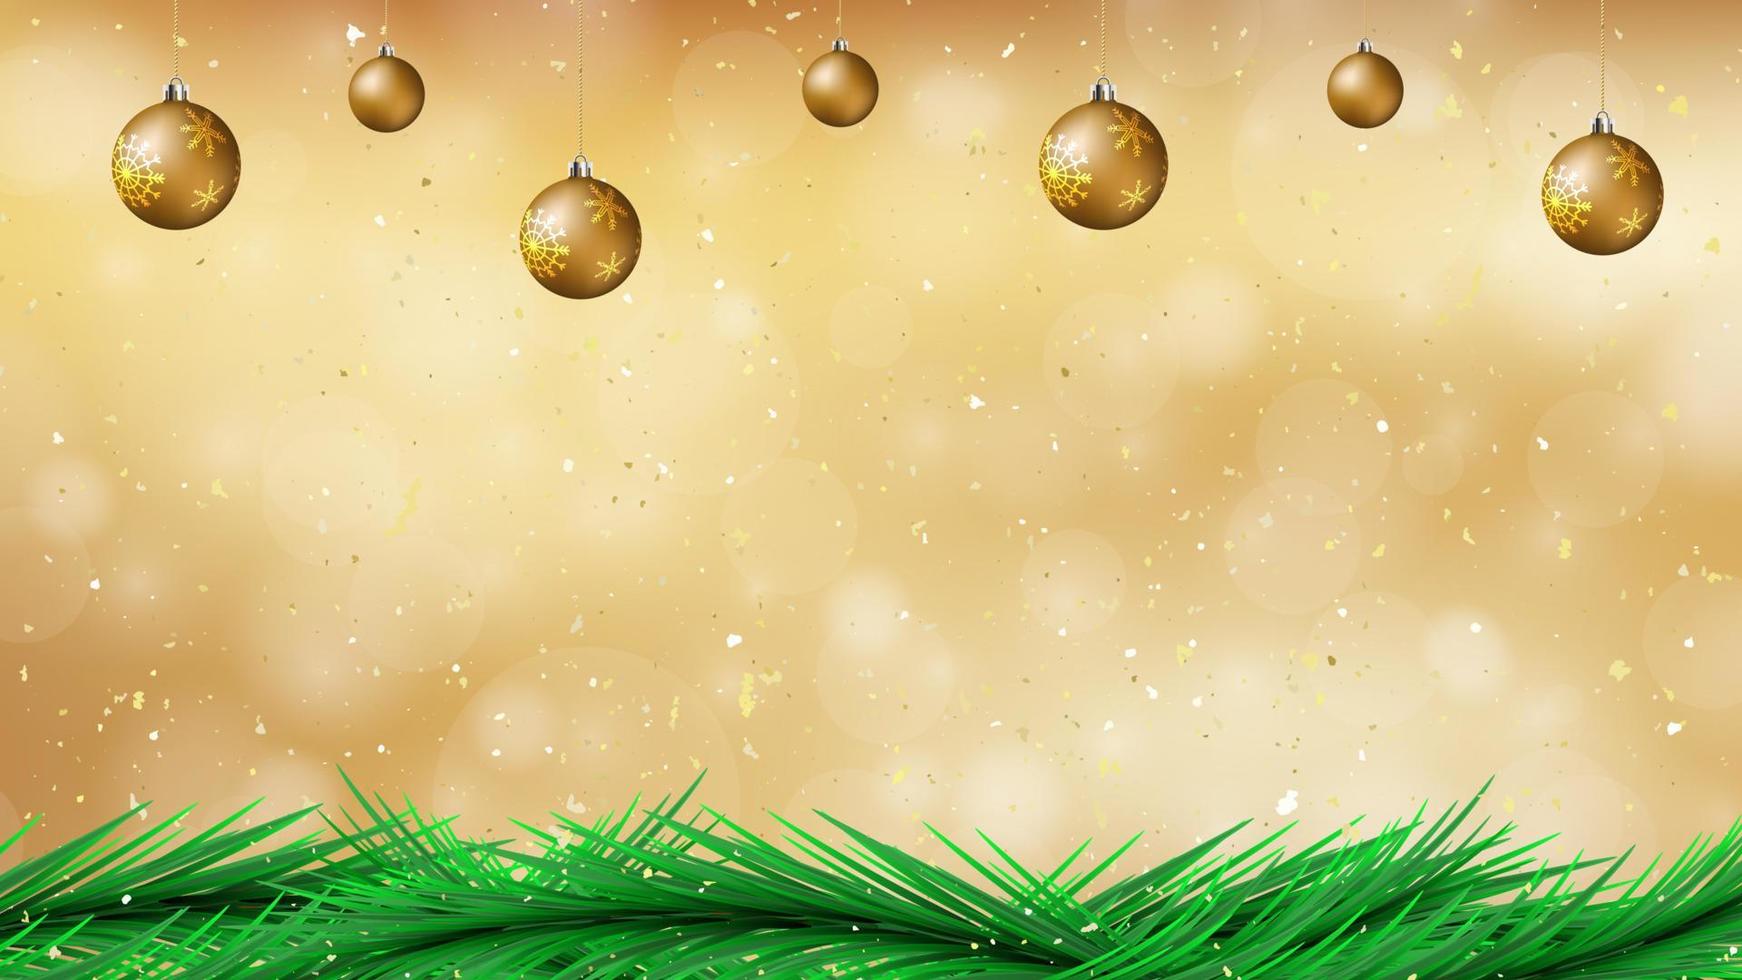 joyeuses fêtes et un arrière-plan vectoriel prospère pour le nouvel an au format eps10 avec bokeh réaliste et paillettes d'or